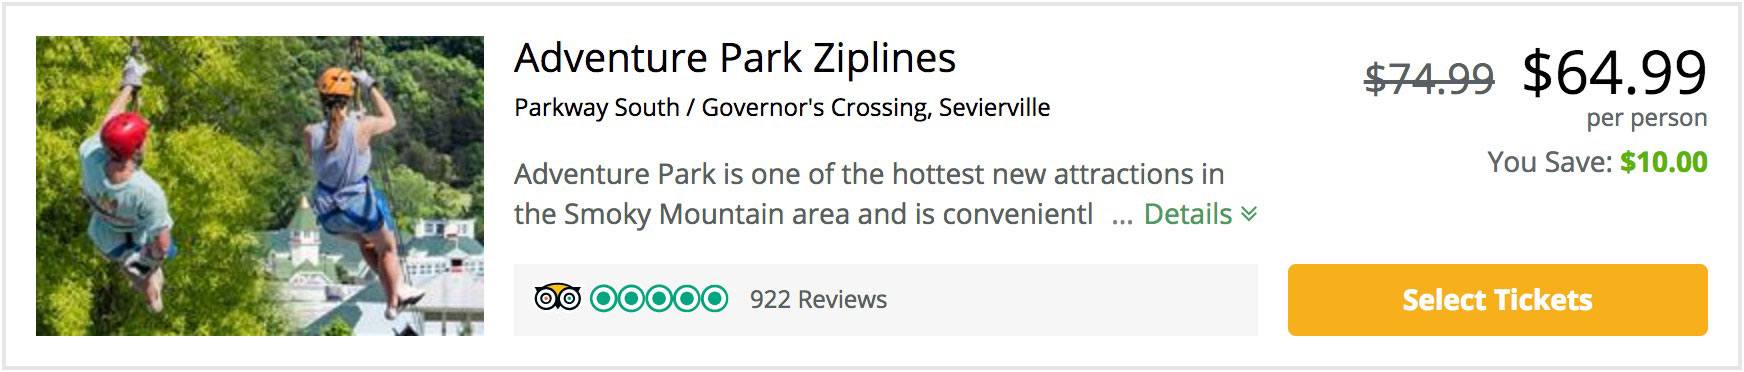 adventure park ziplines coupon